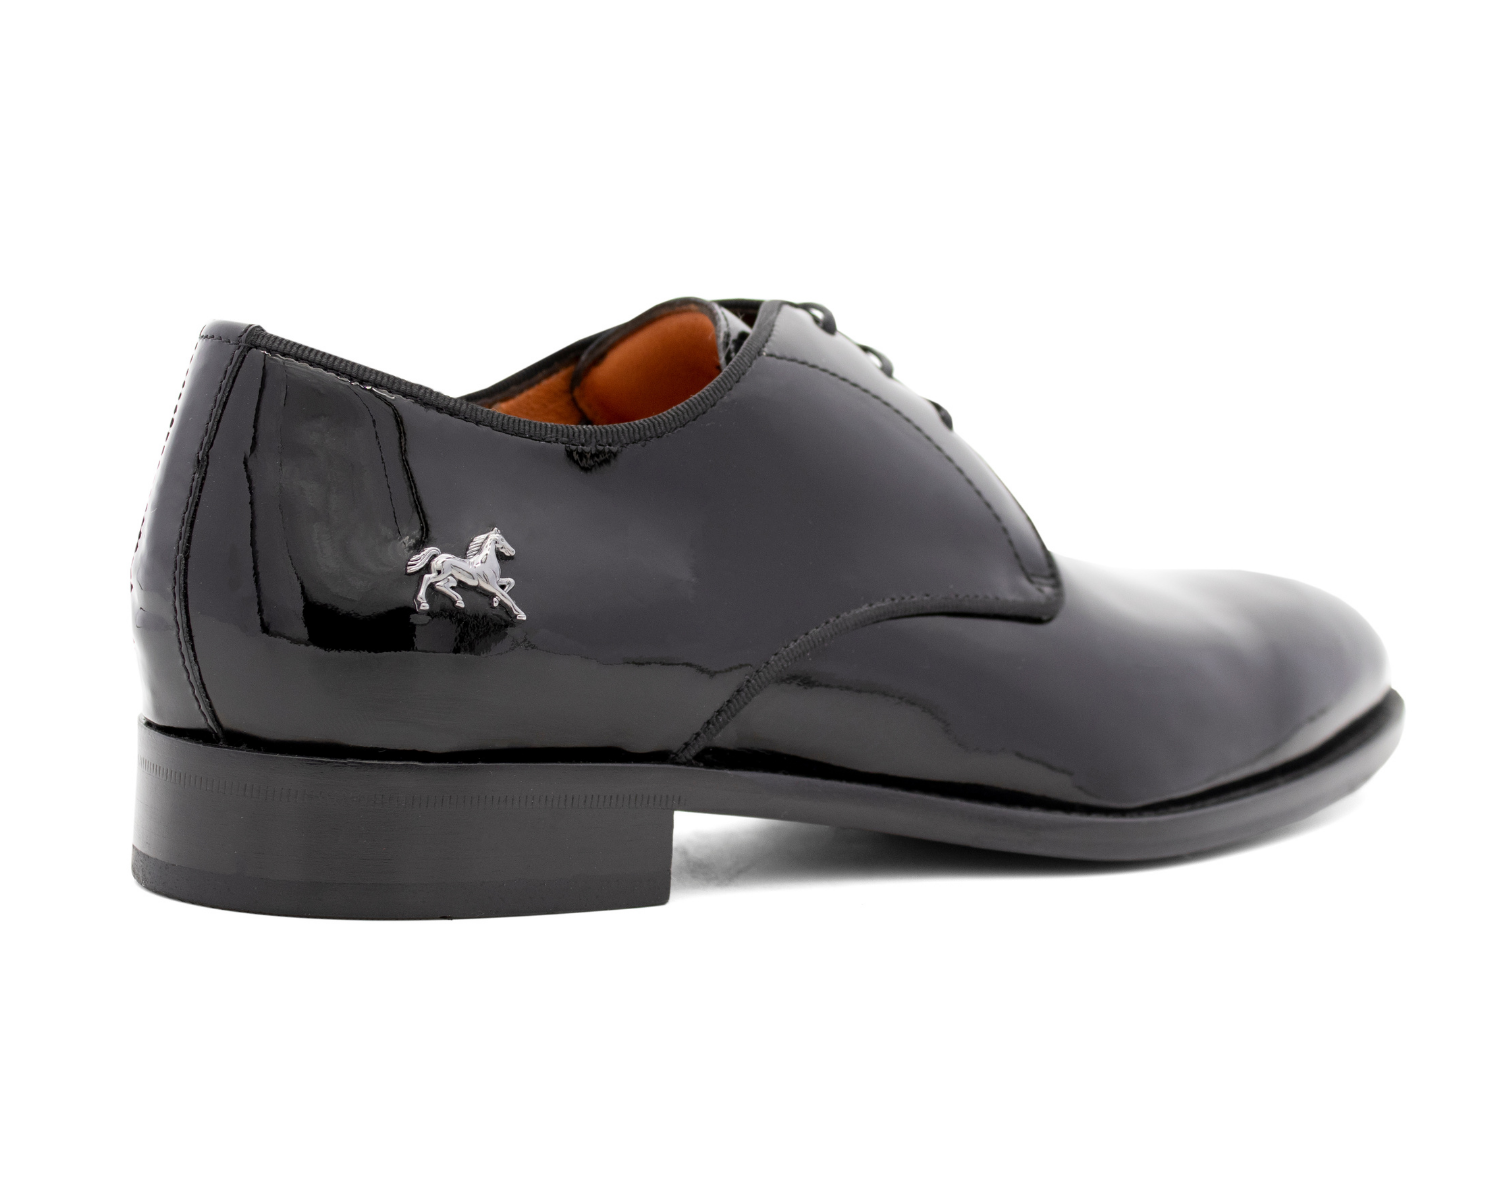 Cavalinho Patent Leather Oxford Shoes - Black - 3_3fbcf51a-df36-4207-955e-38eccfa7c6a7